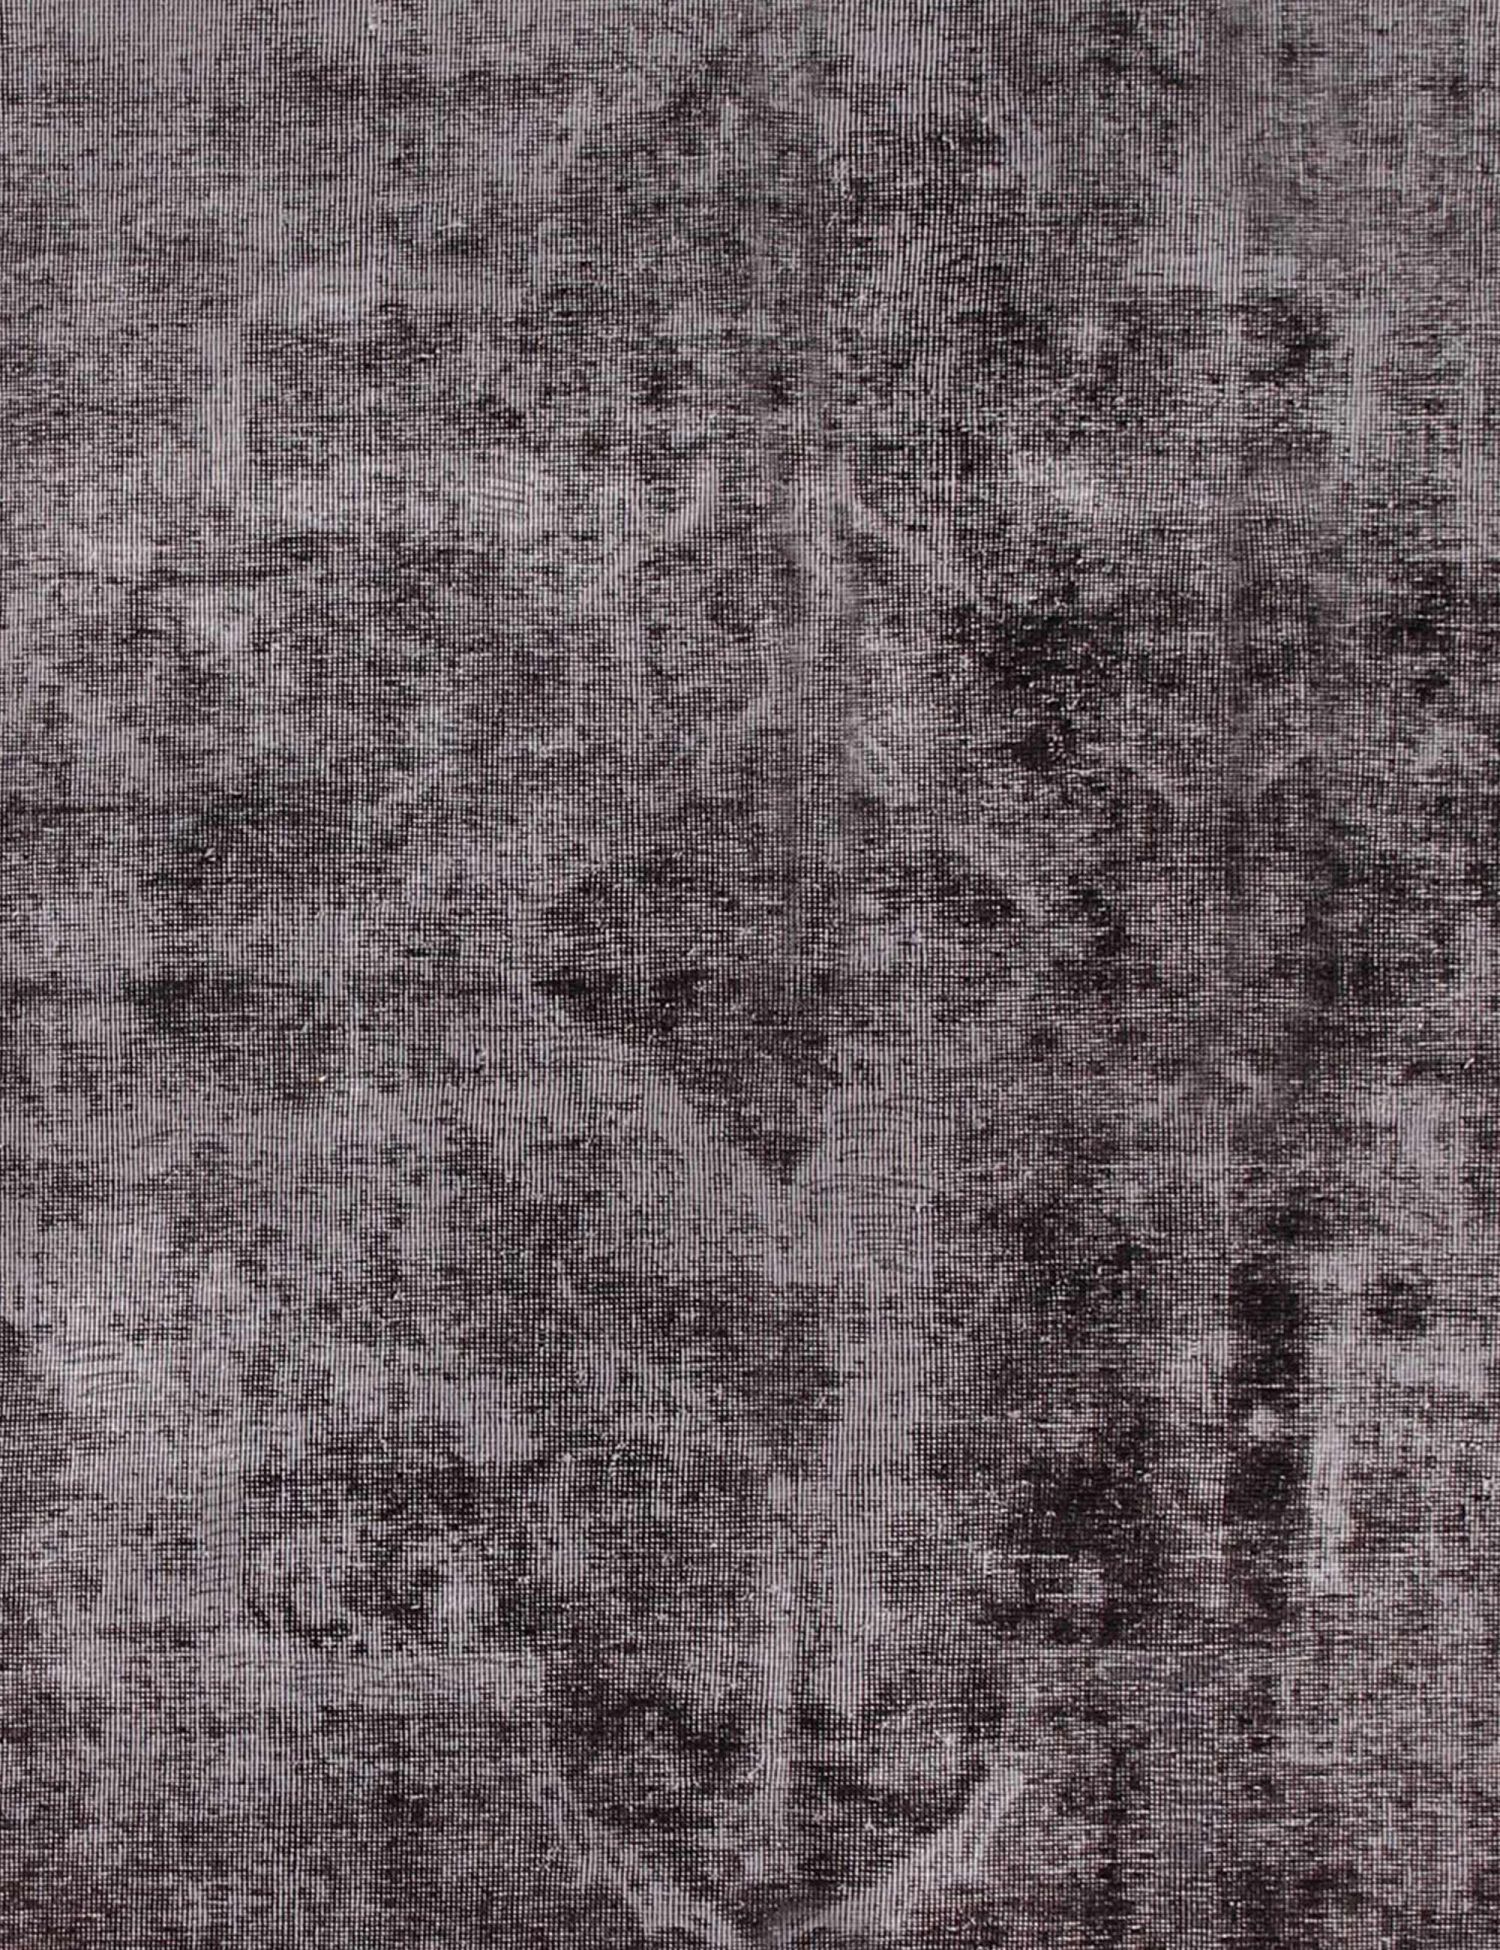 Persischer Vintage Teppich  schwarz <br/>214 x 214 cm